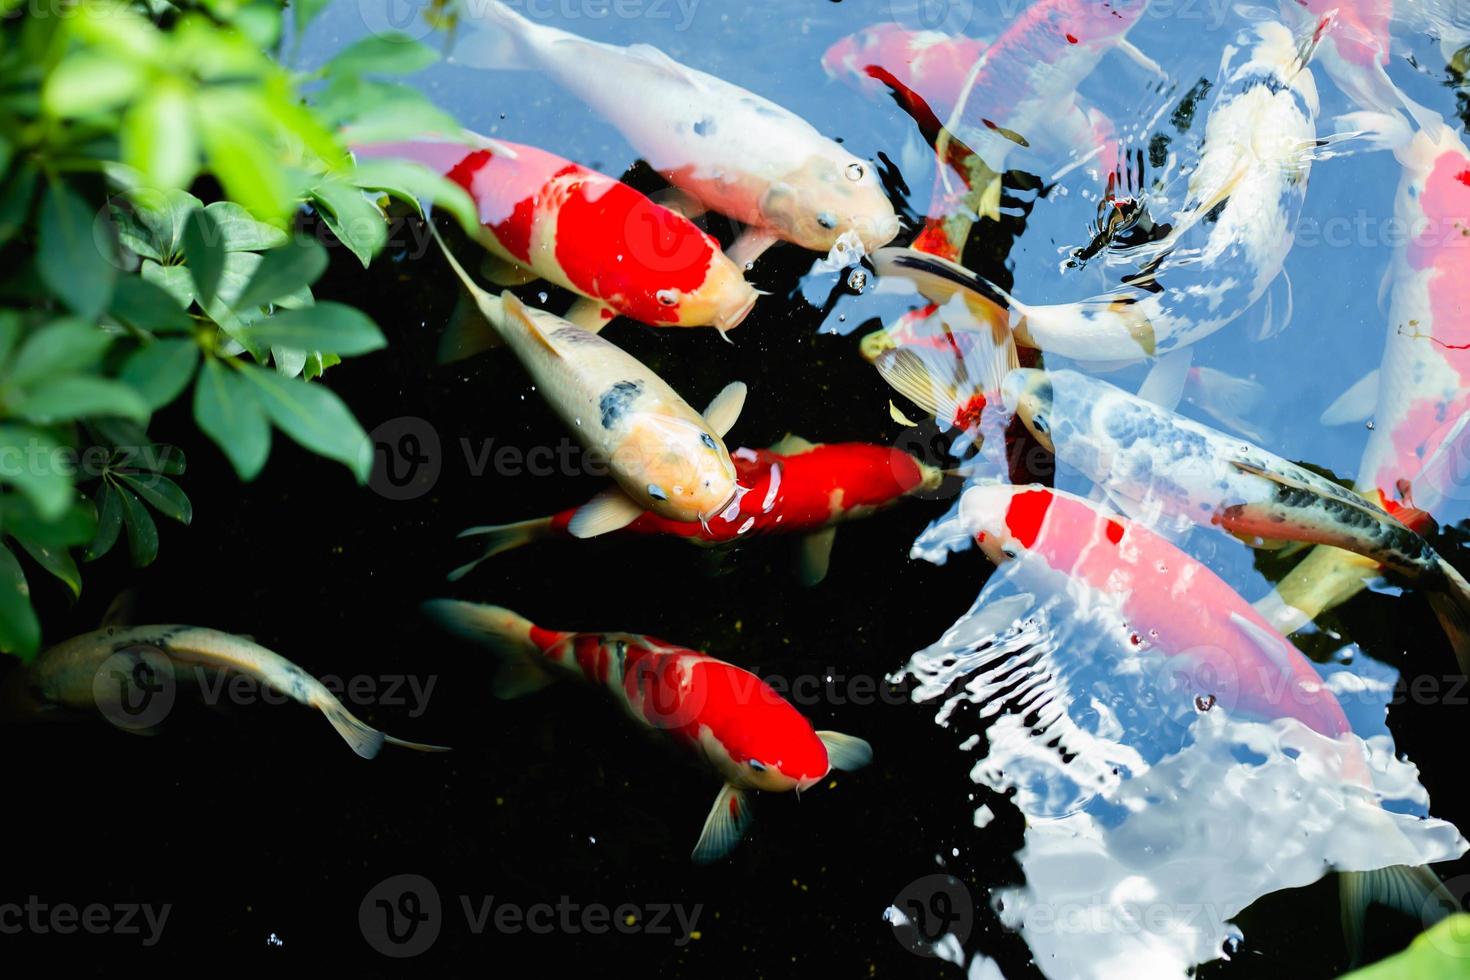 akvariefärgade fiskar i mörkt djupblått vatten foto